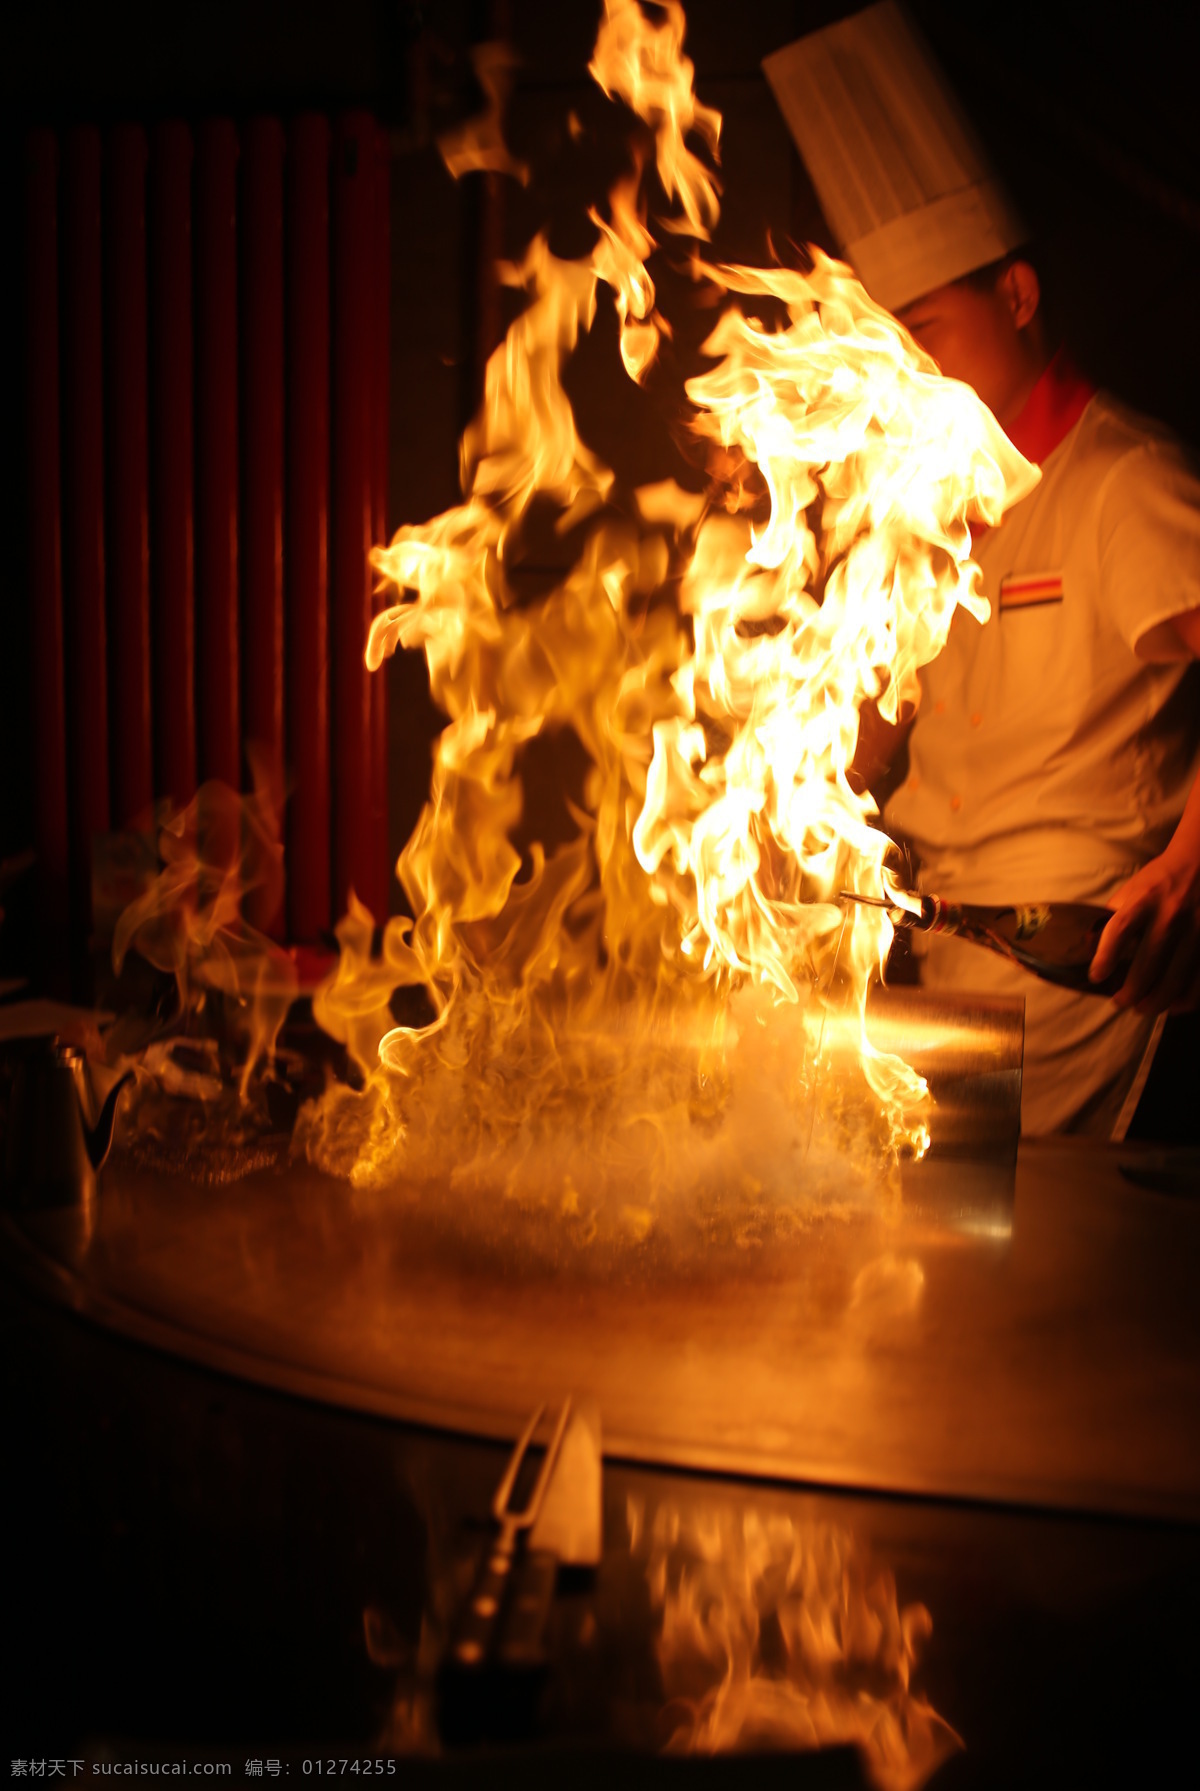 铁板烧火焰 铁板烧 火焰 厨师做菜 铁板烧厨师 大火焰